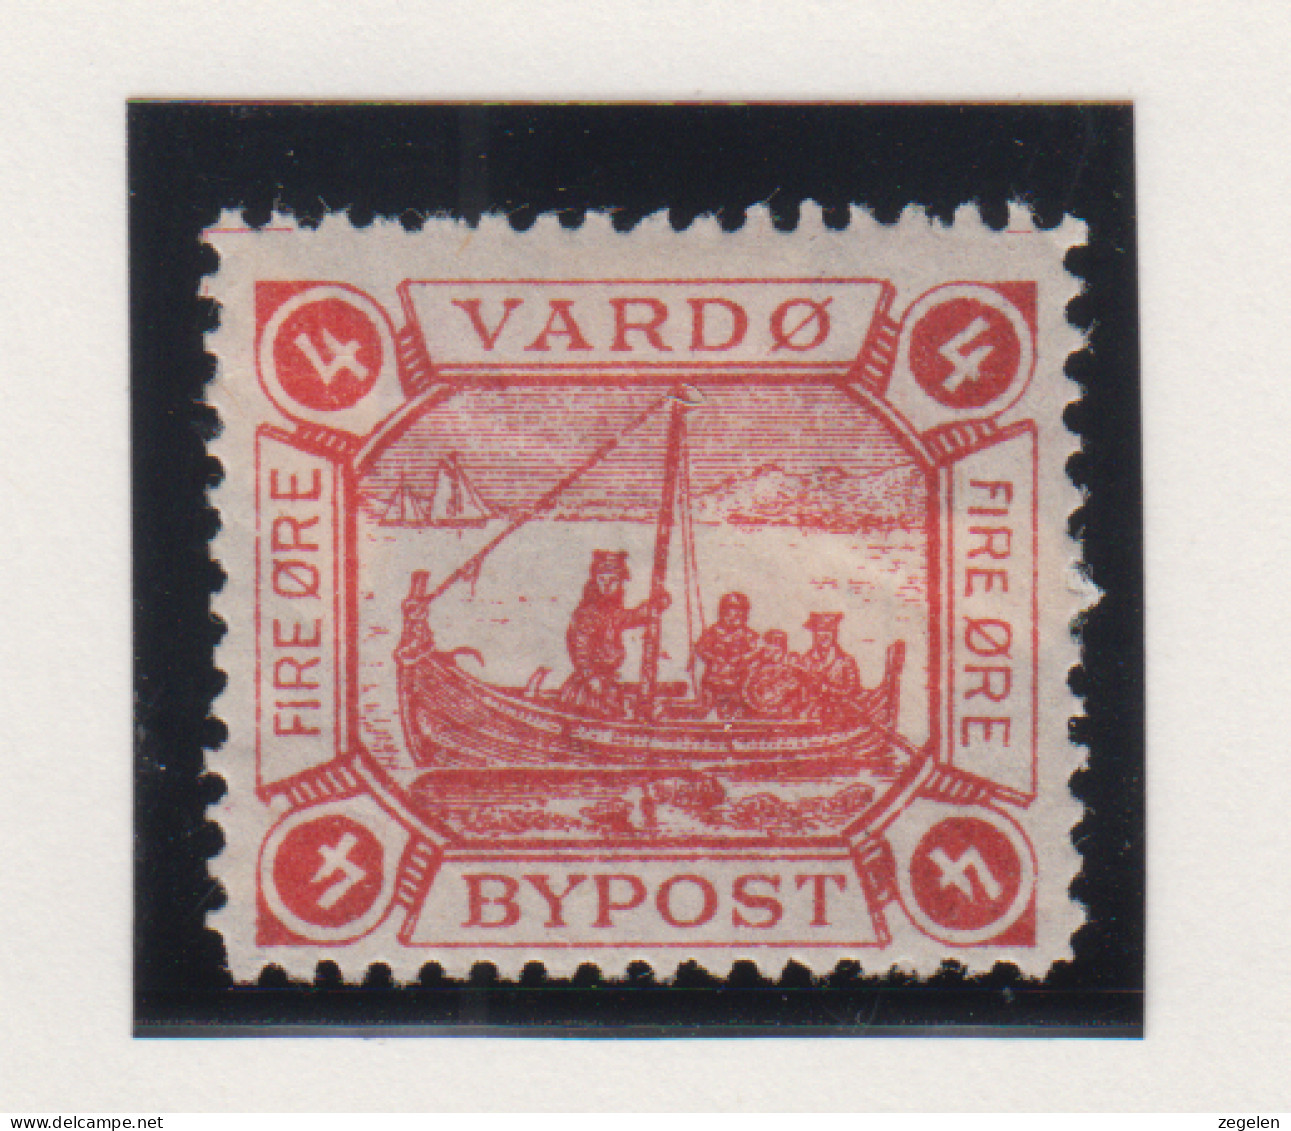 Noorwegen Lokale Zegel   Katalog Over Norges Byposter Vardo Bypost 2 - Emisiones Locales